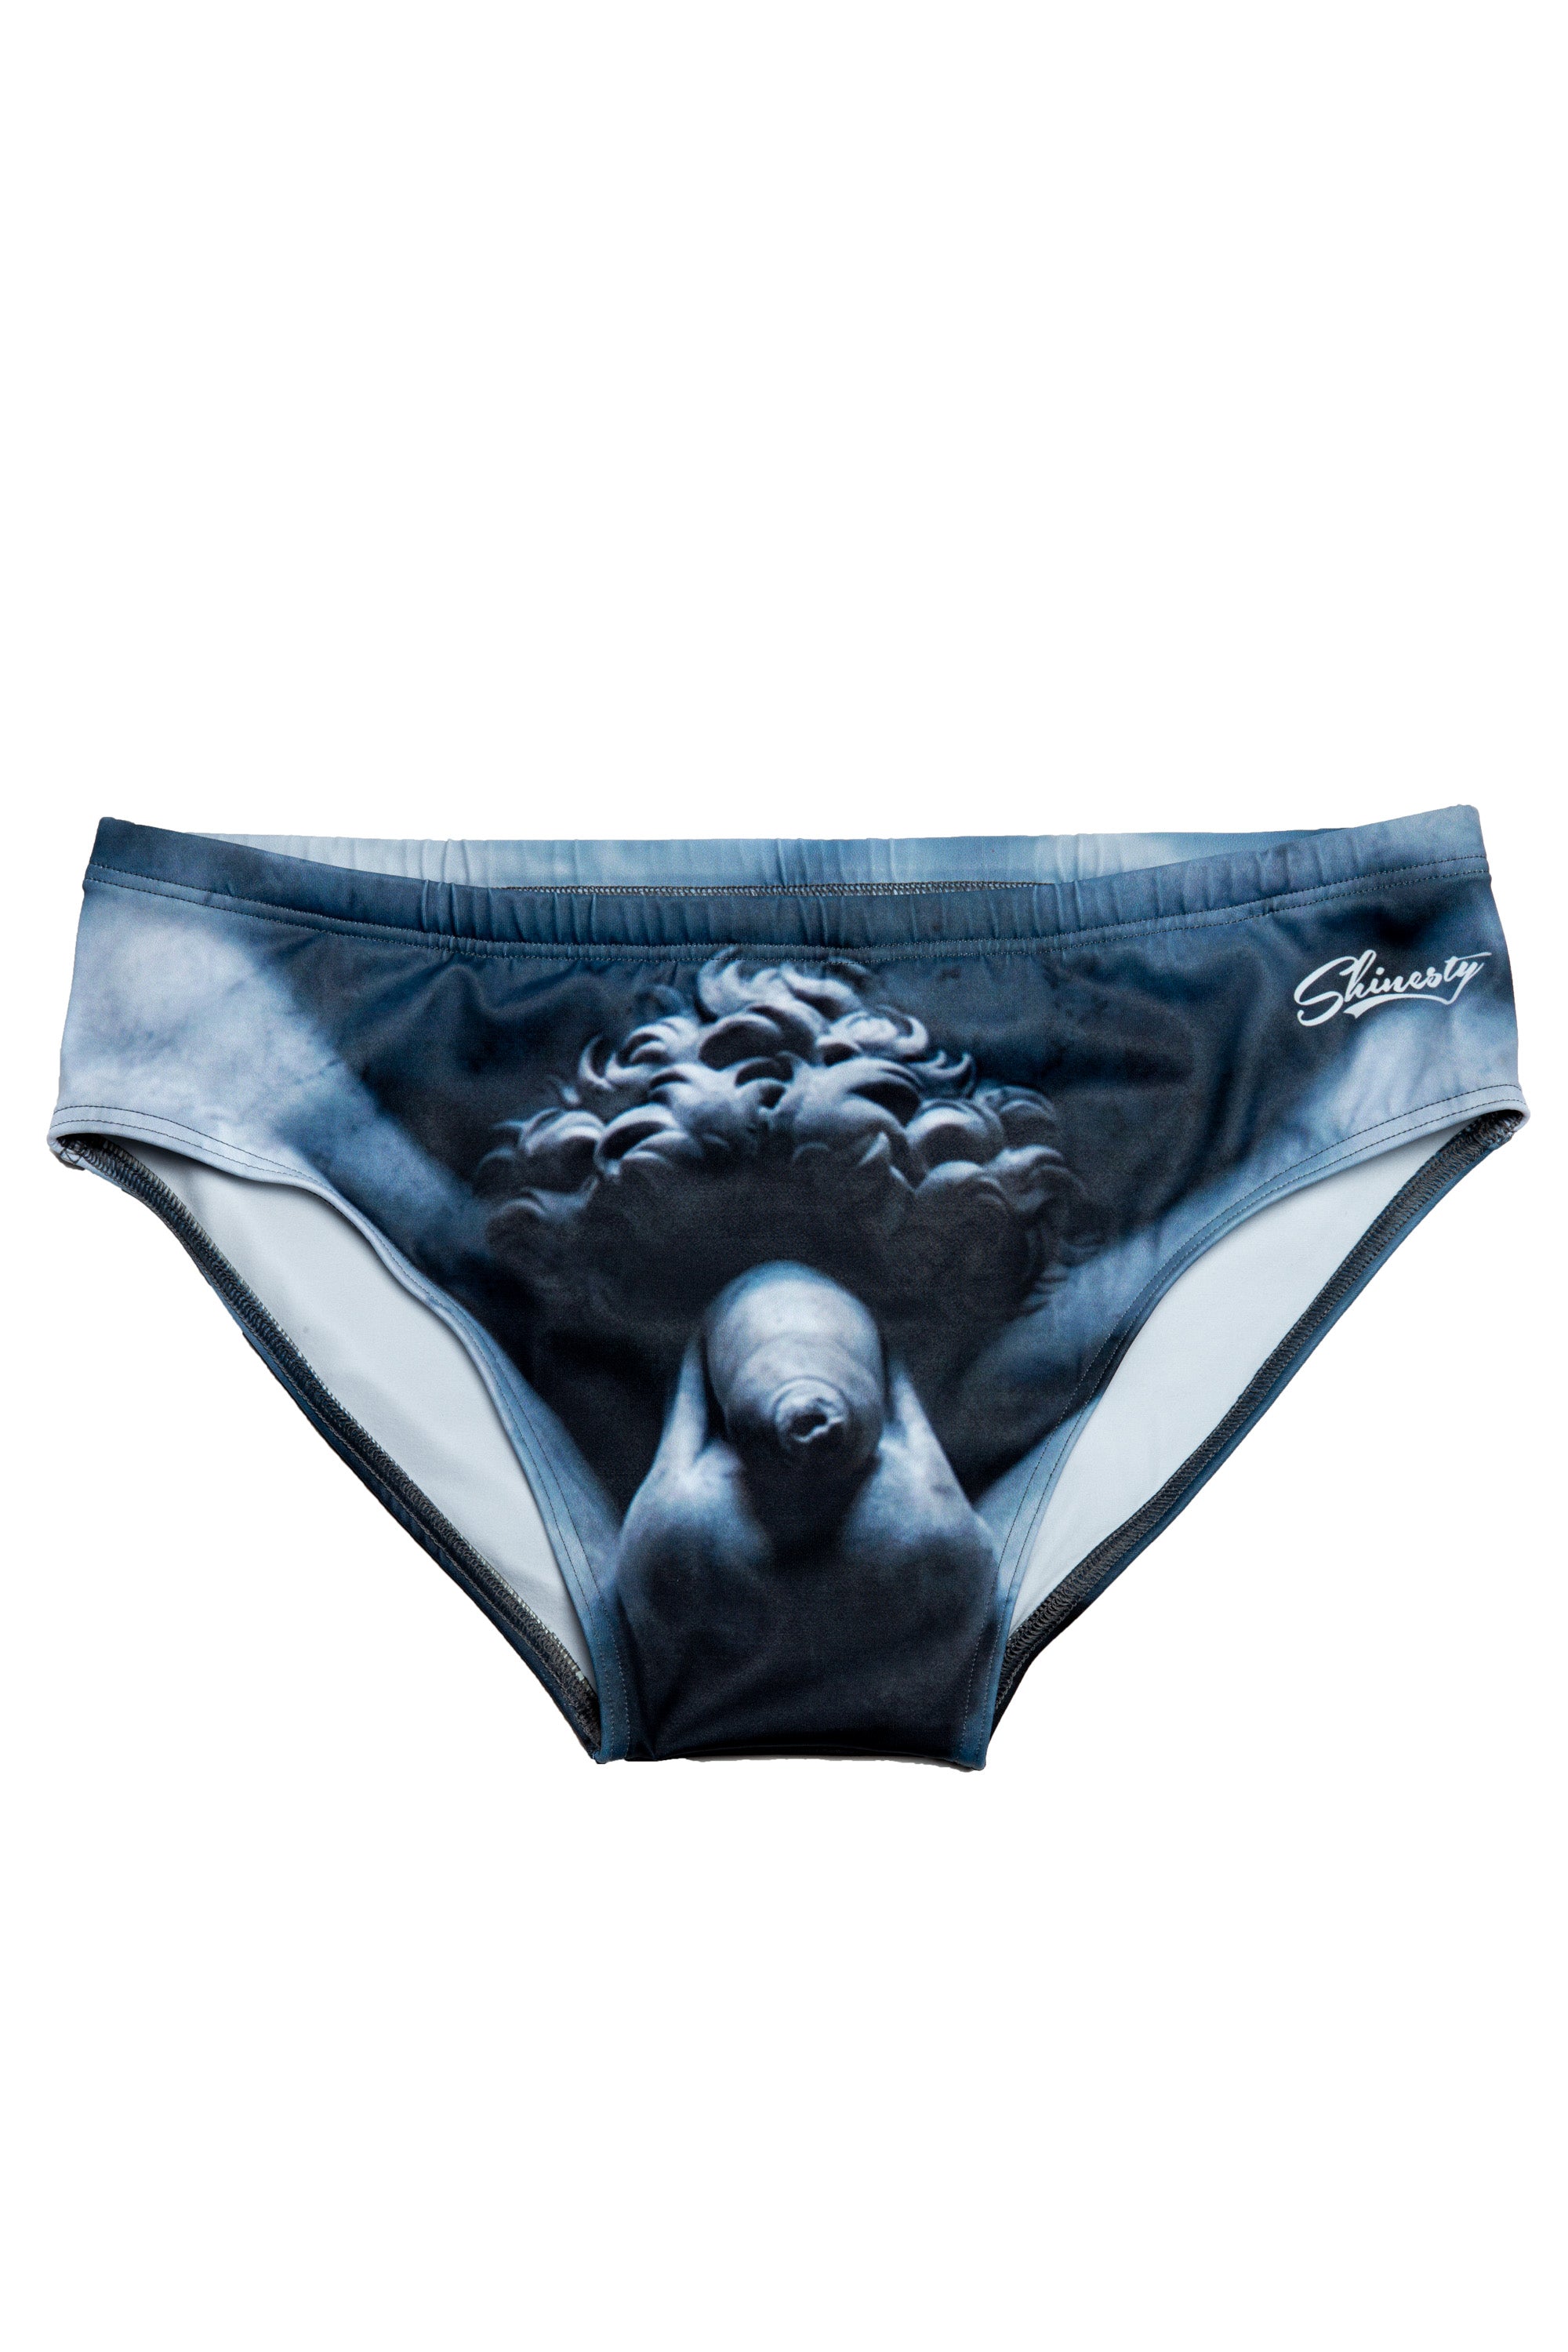 Michelangelo Sculpture of David's Underwear for Men - ABC Underwear